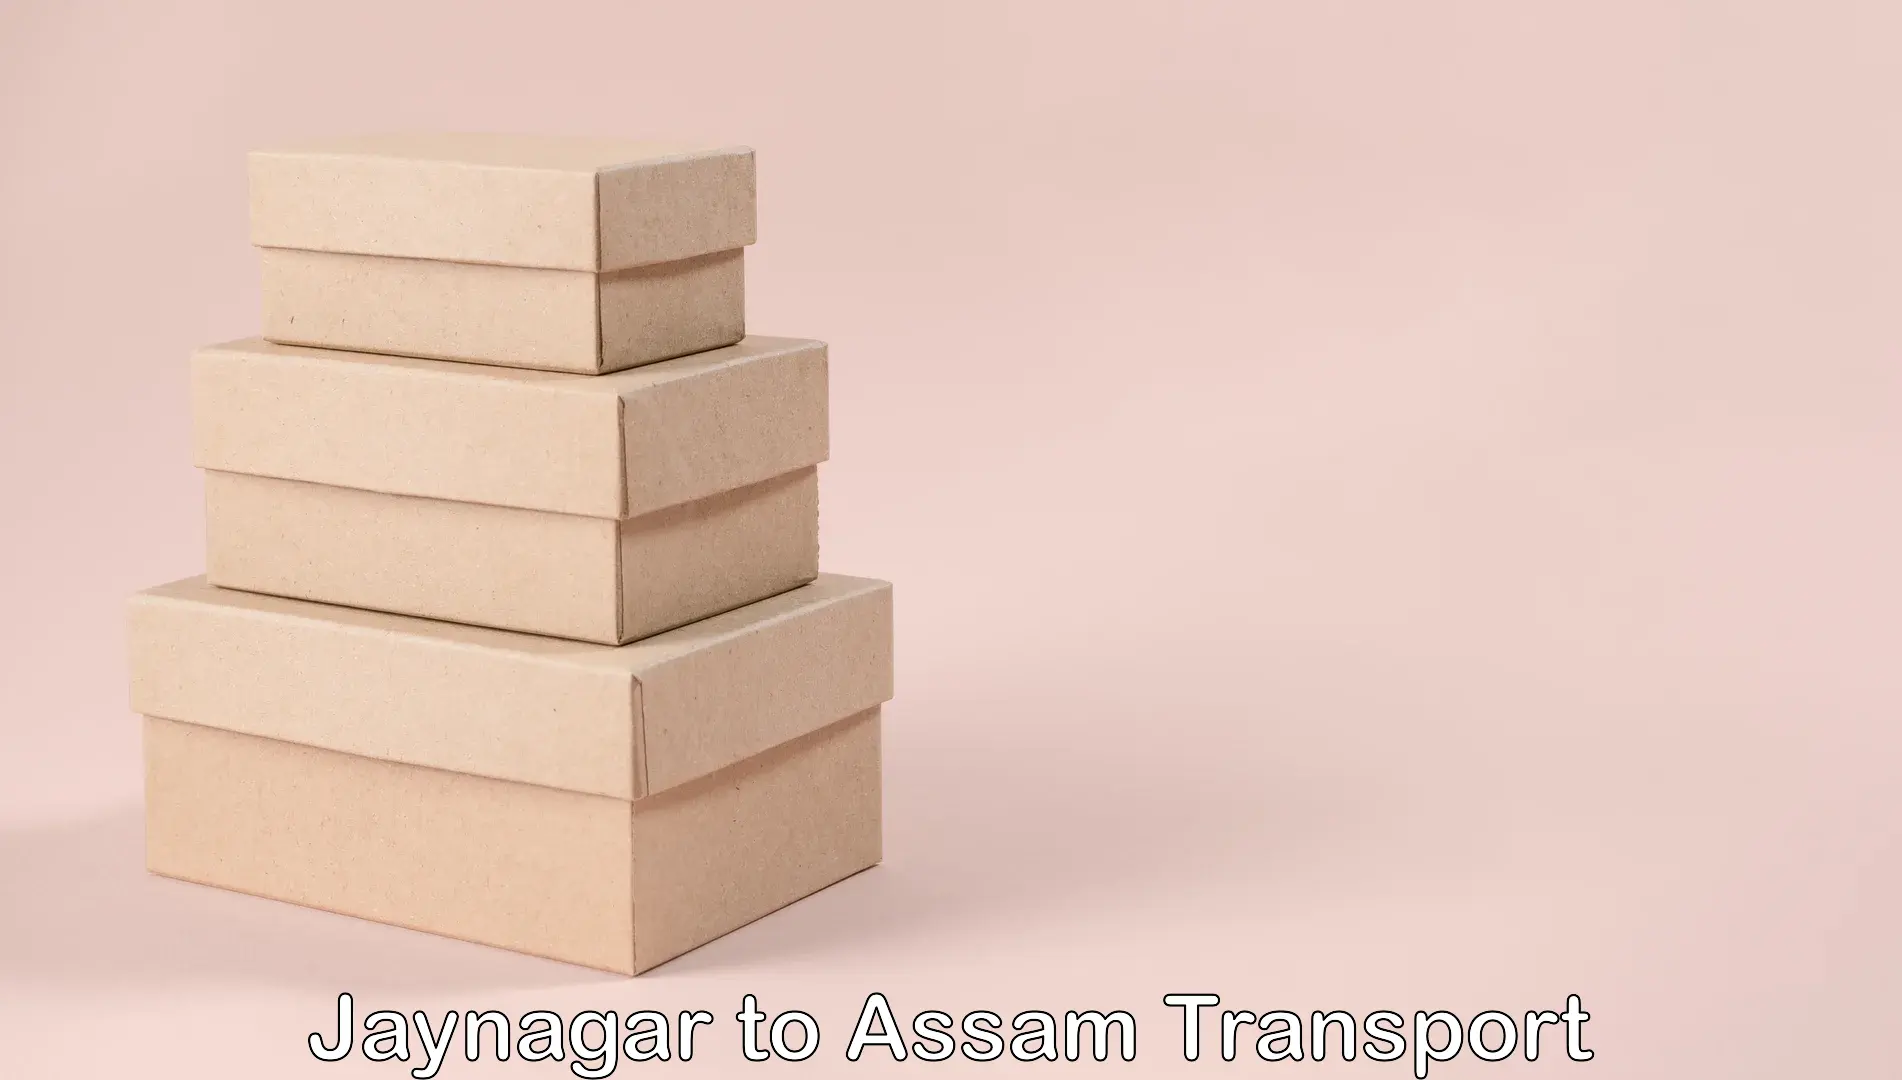 All India transport service Jaynagar to Lala Assam